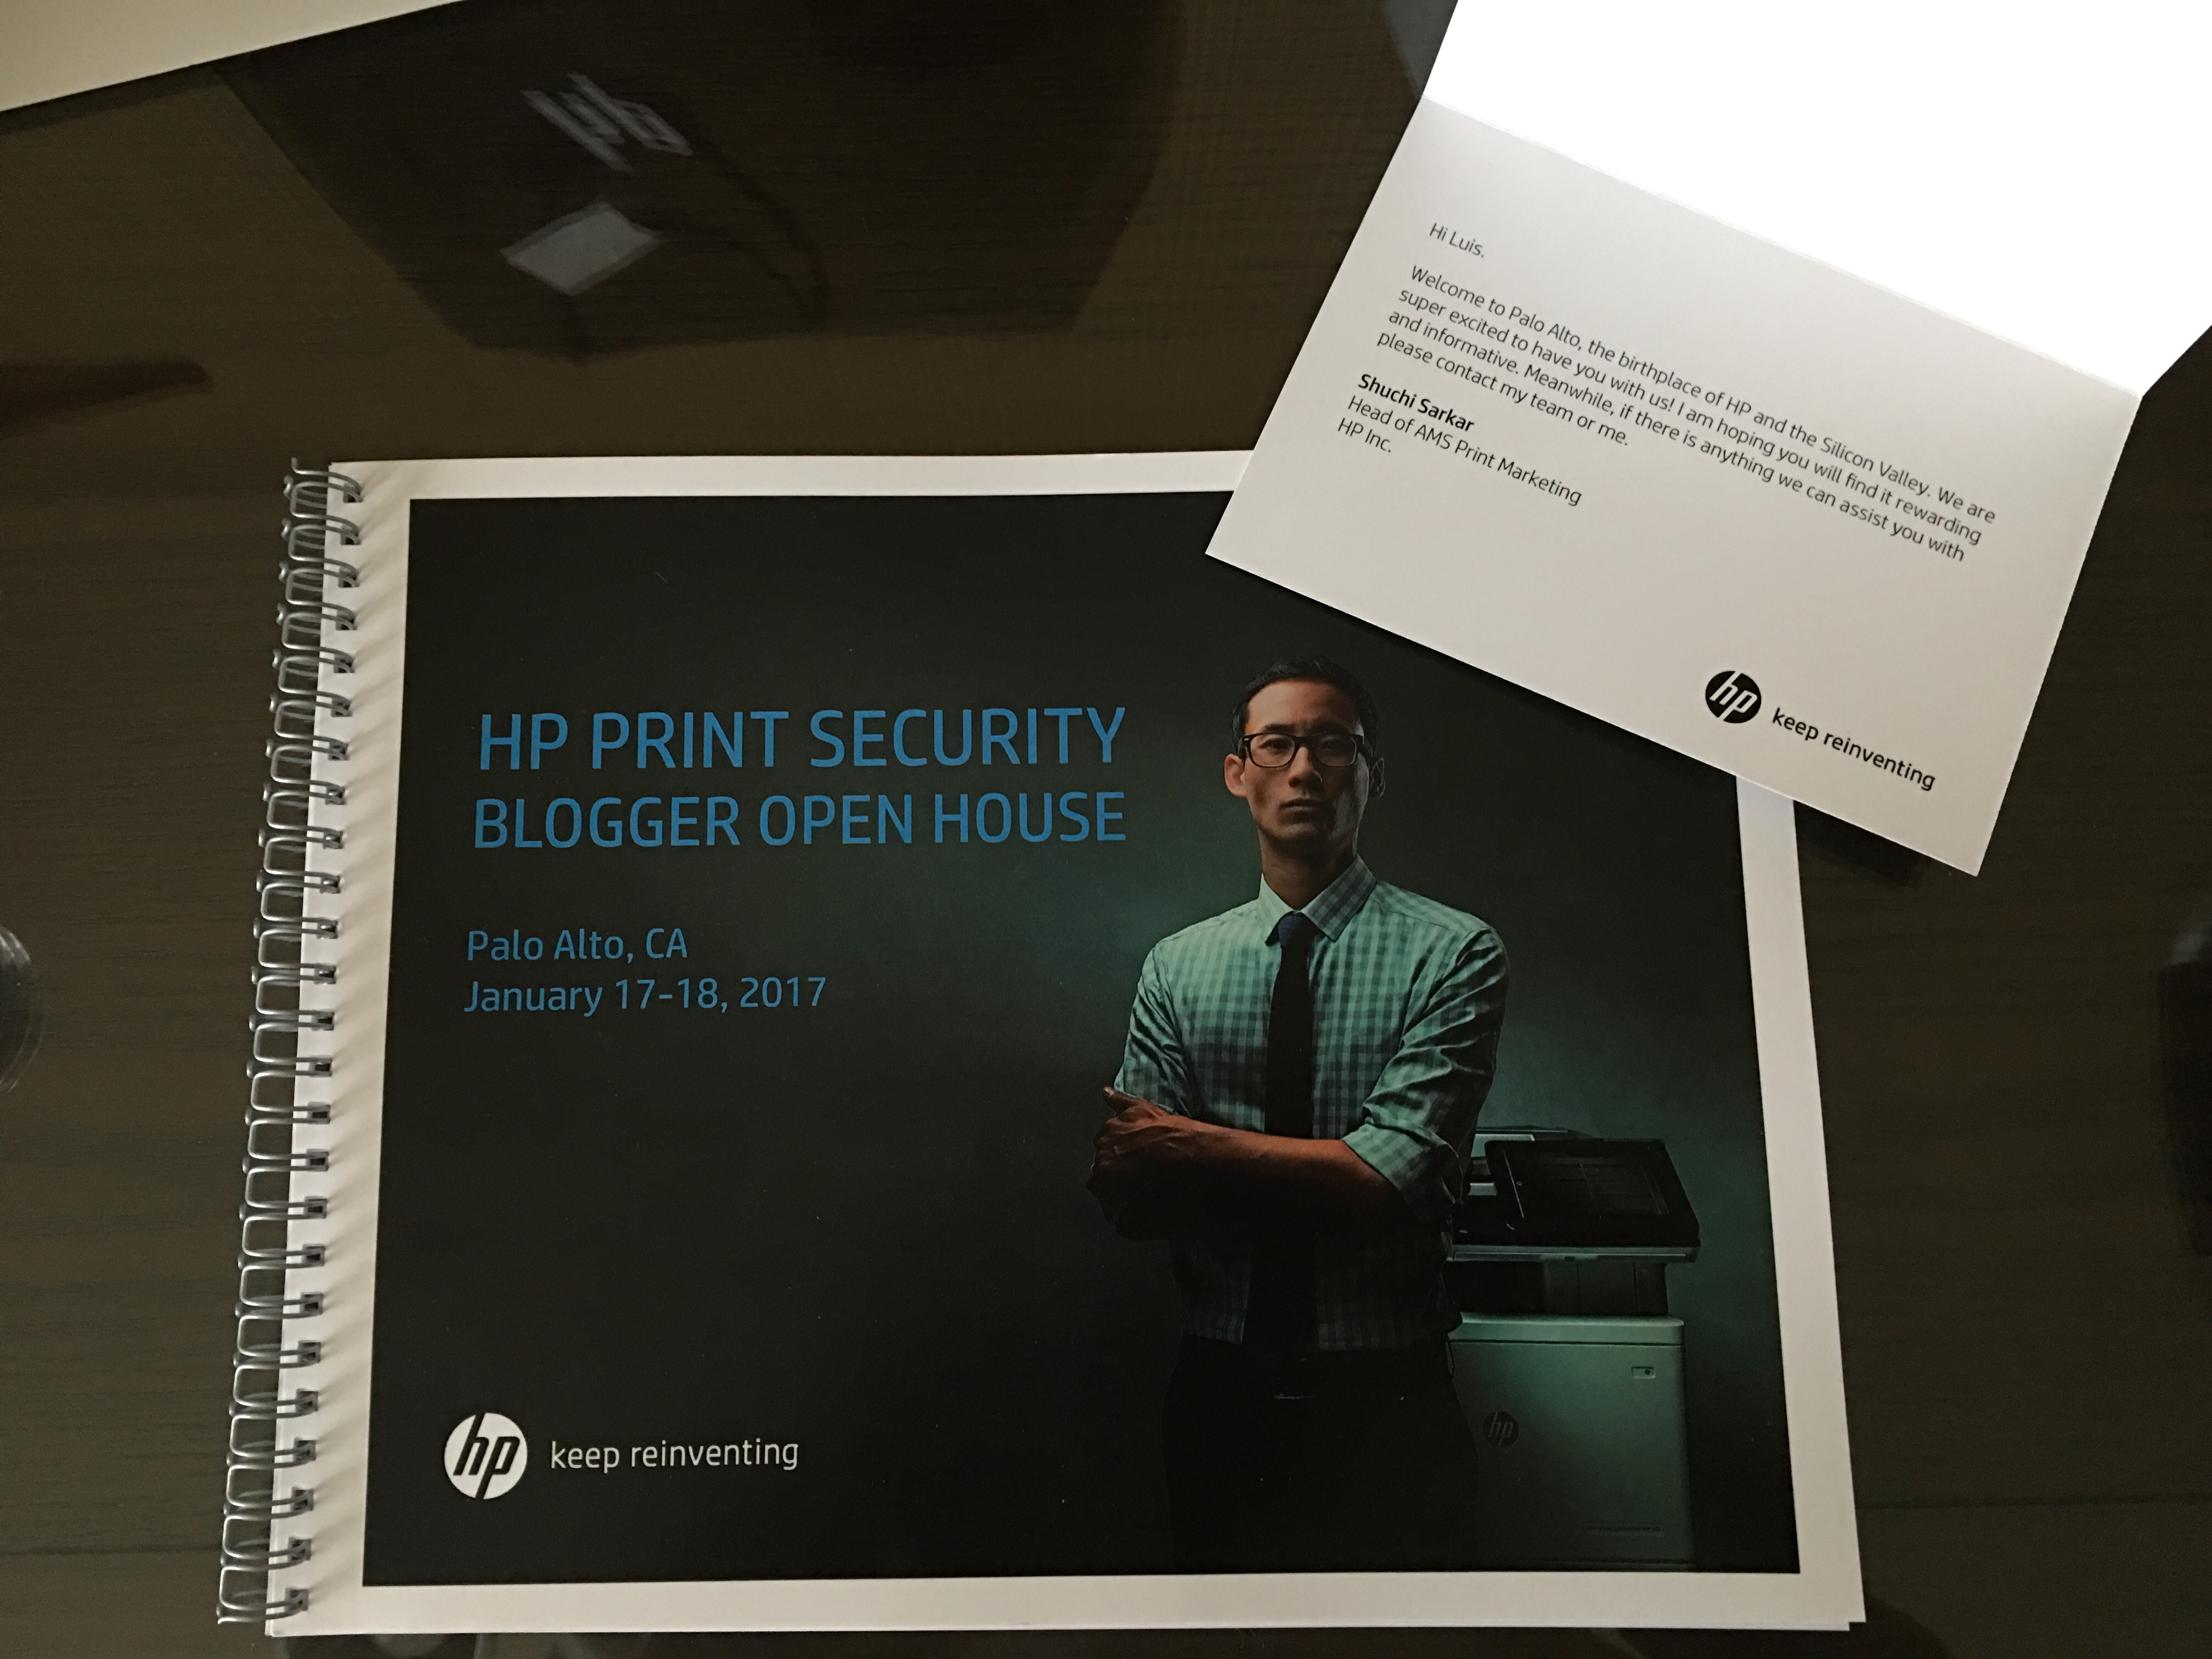 Conozcamos la vision de HP para la seguridad en la impresión #ReinventSecurity